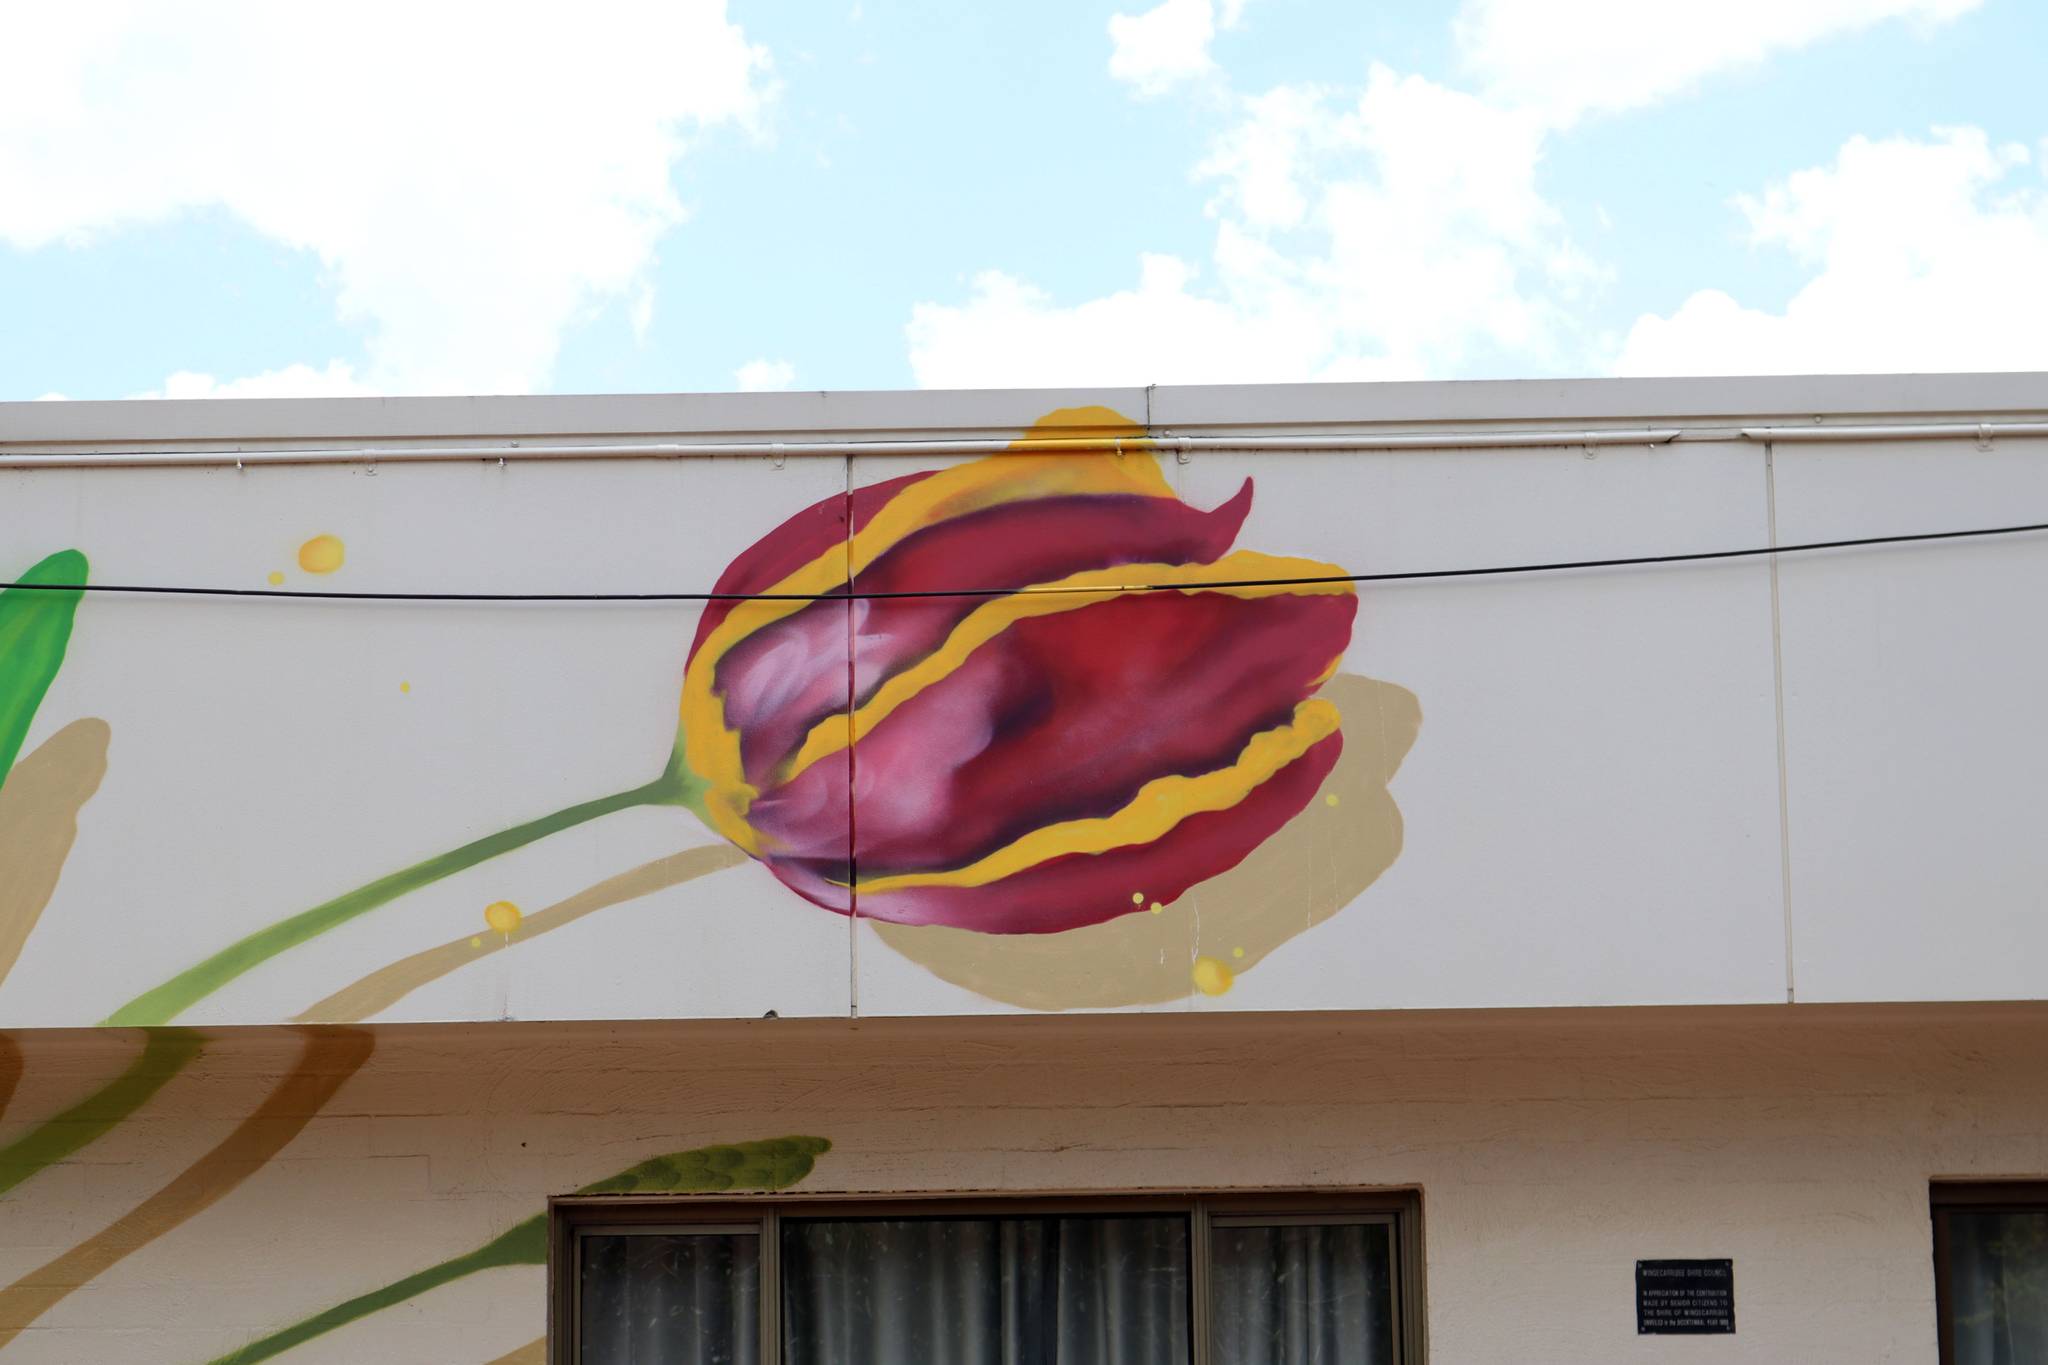 Muralisto&mdash;Homage to the Tulip